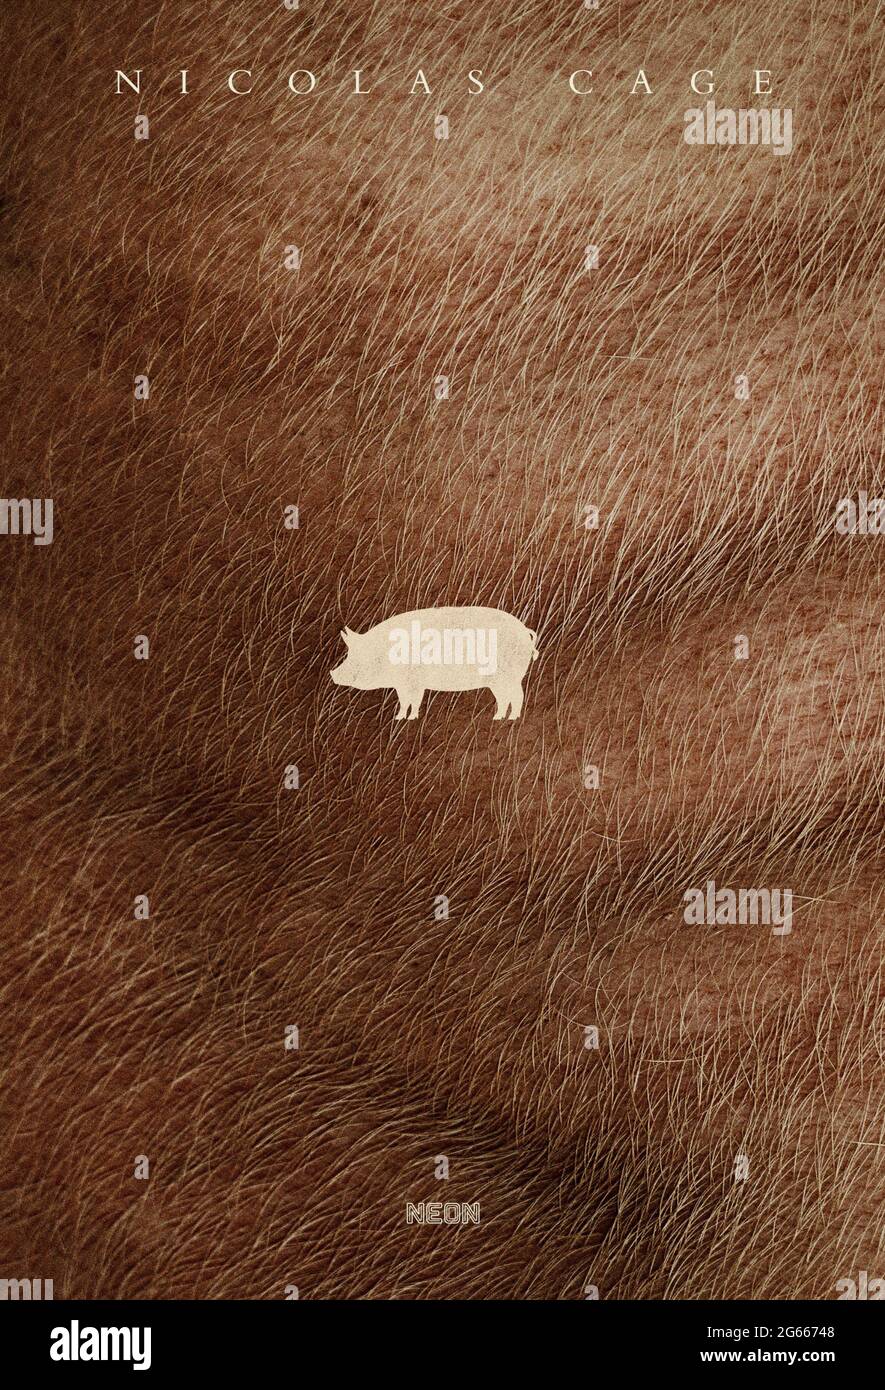 Pig (2021) diretto da Michael Sarnoski e interpretato da Nicolas Cage, Alex Wolff e Adam Arkin. Una cacciatrice di tartufi che vive da sola nel deserto deve tornare al suo passato a Portland, Oregon, alla ricerca del suo amato maiale da foraggio dopo essere stata rapita. Foto Stock